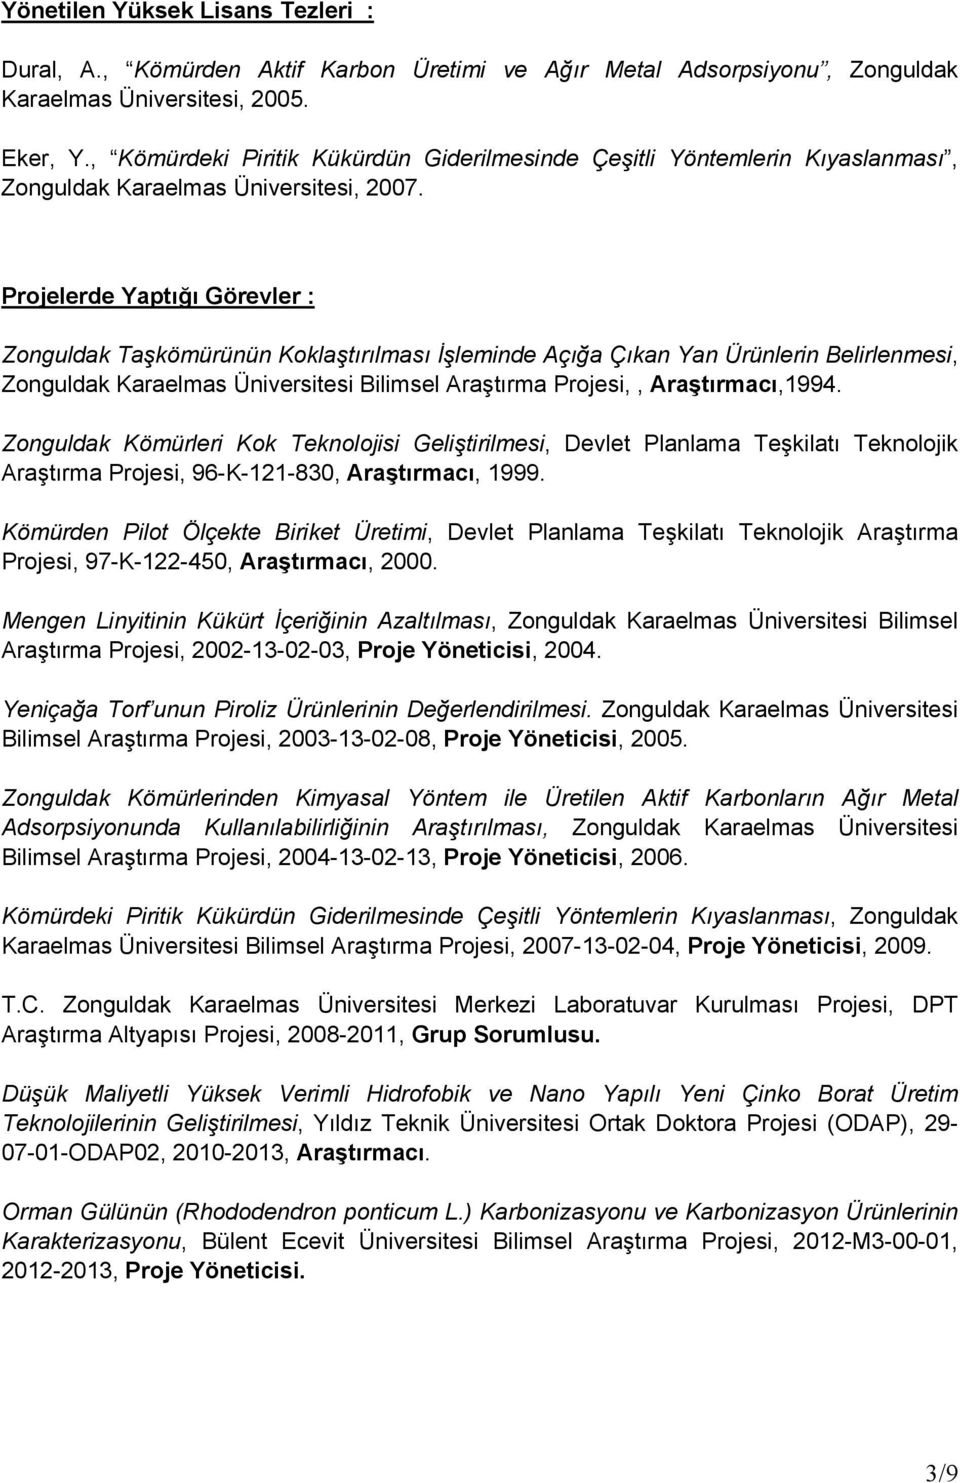 Projelerde Yaptığı Görevler : Zonguldak Taşkömürünün Koklaştırılması İşleminde Açığa Çıkan Yan Ürünlerin Belirlenmesi, Zonguldak Karaelmas Bilimsel Araştırma Projesi,, Araştırmacı,1994.